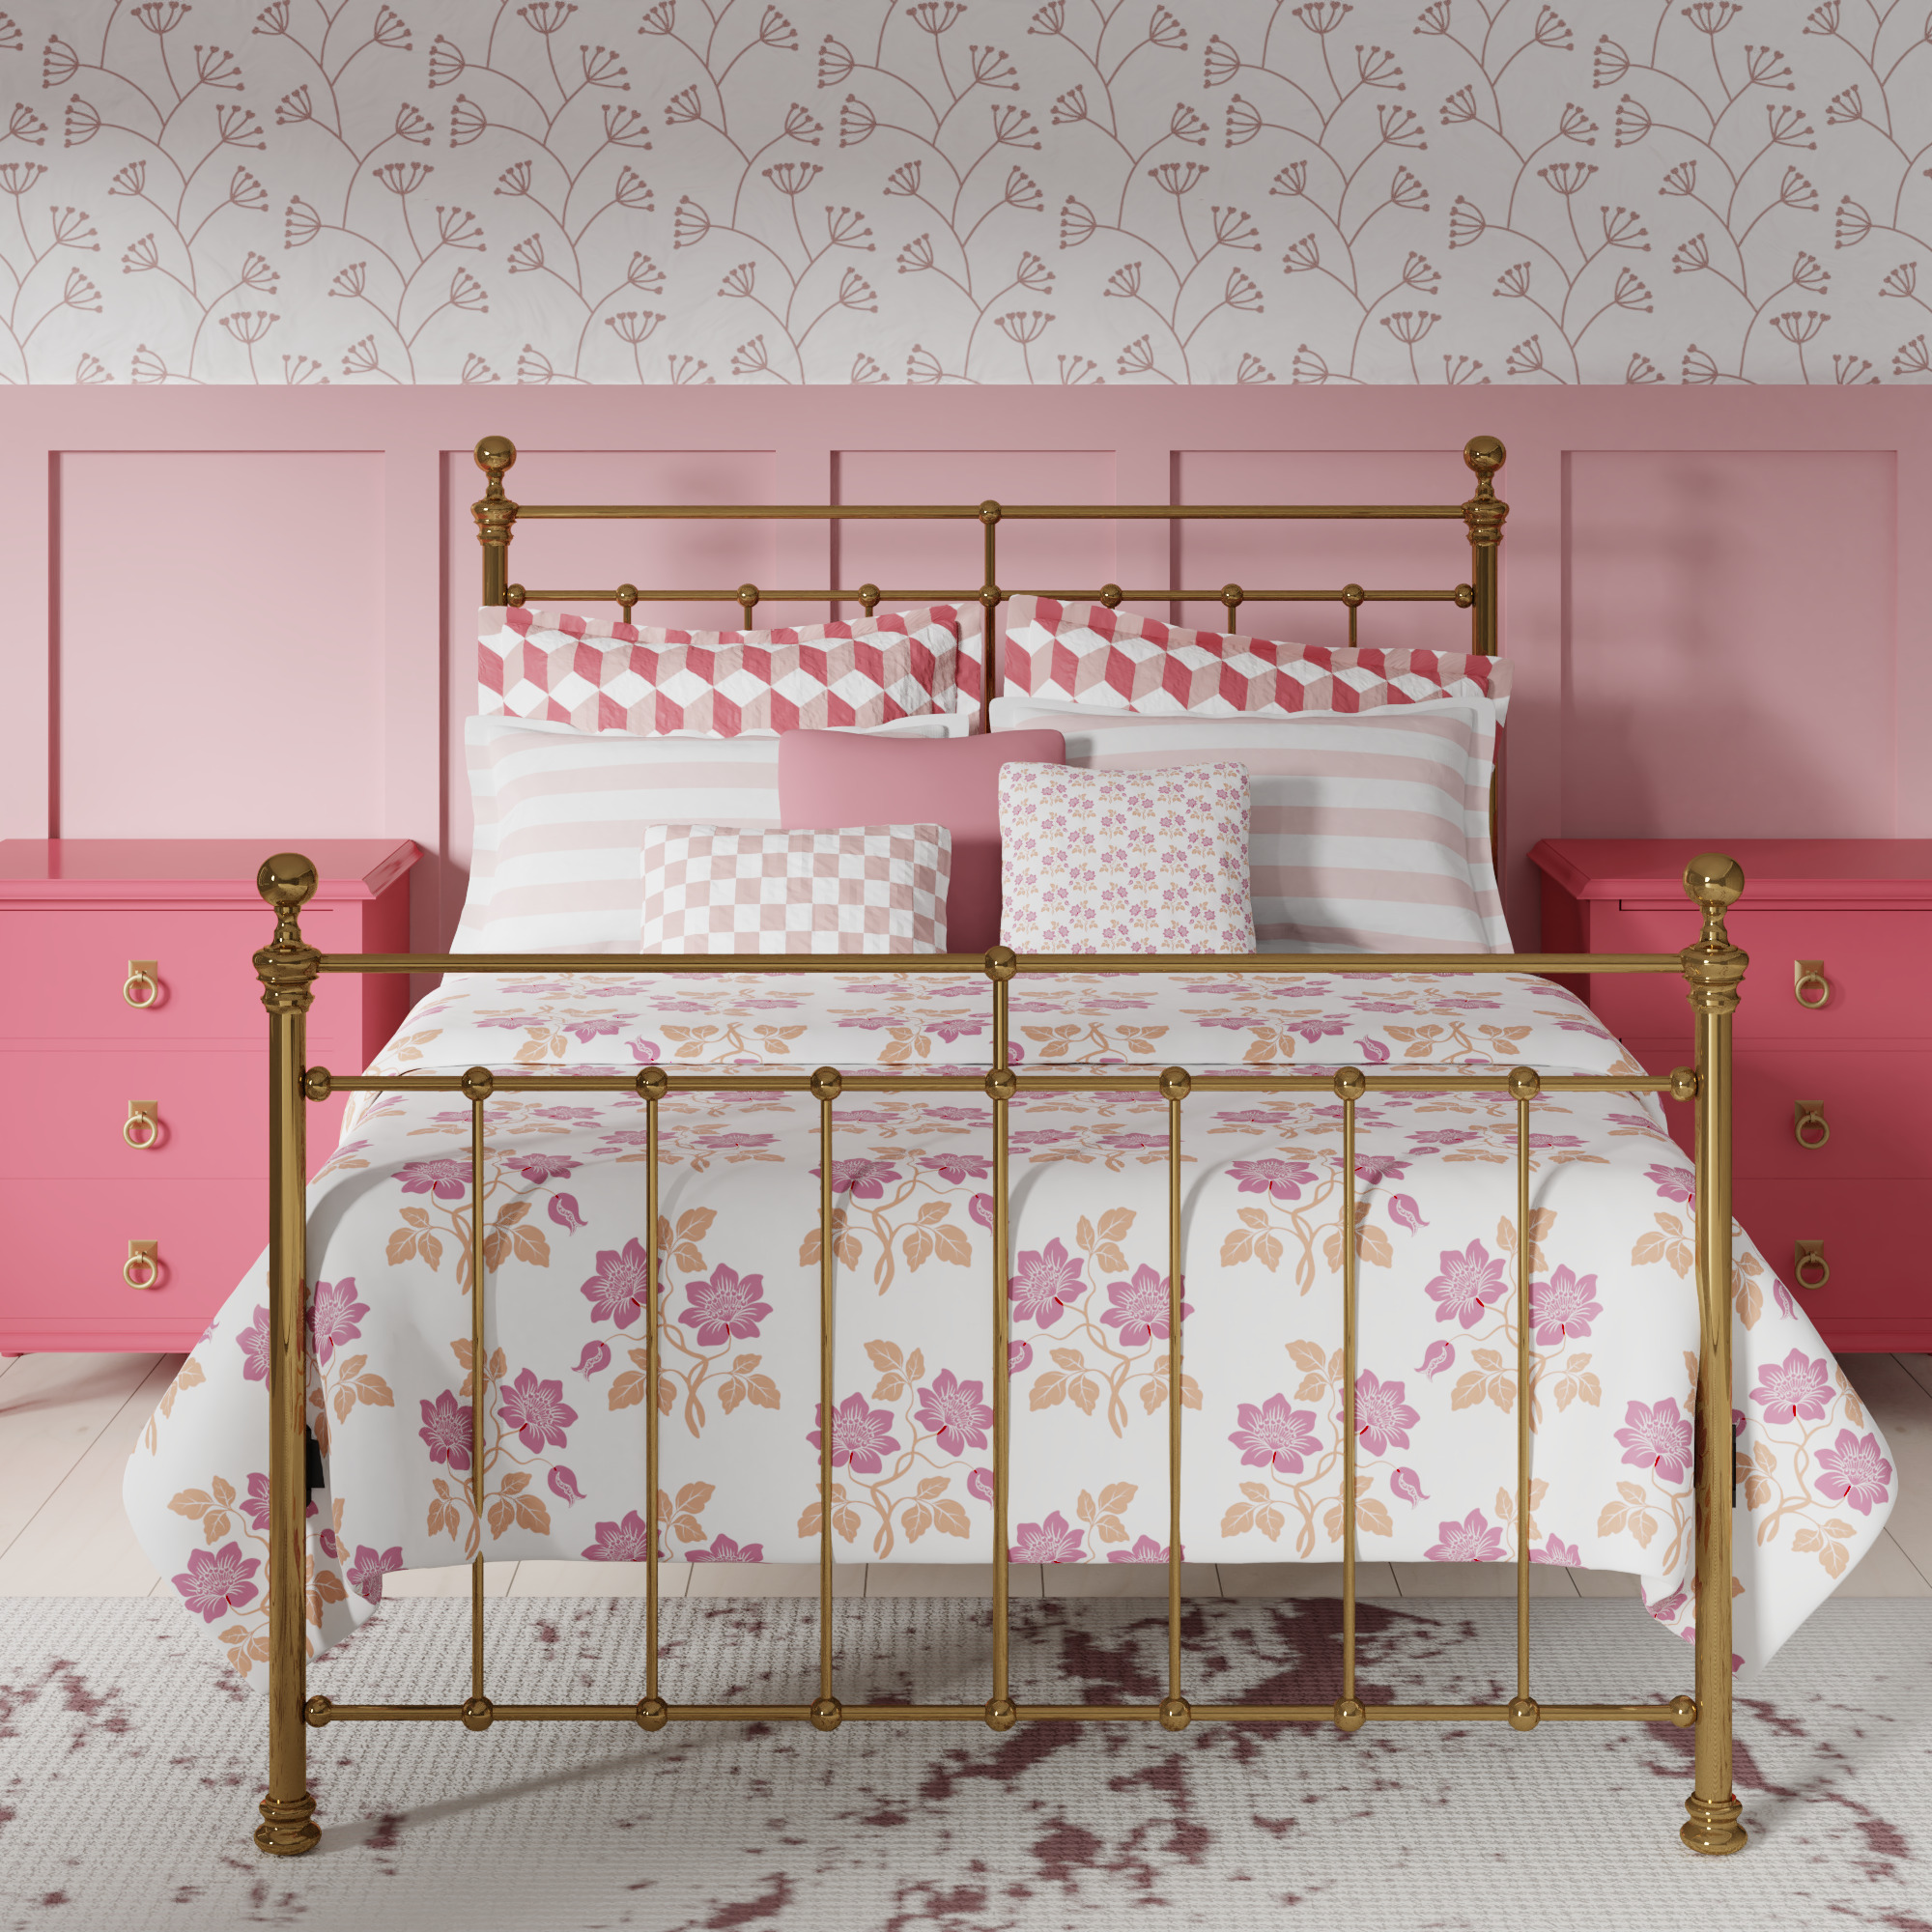 Blyth brass bed - Image pink bedroom